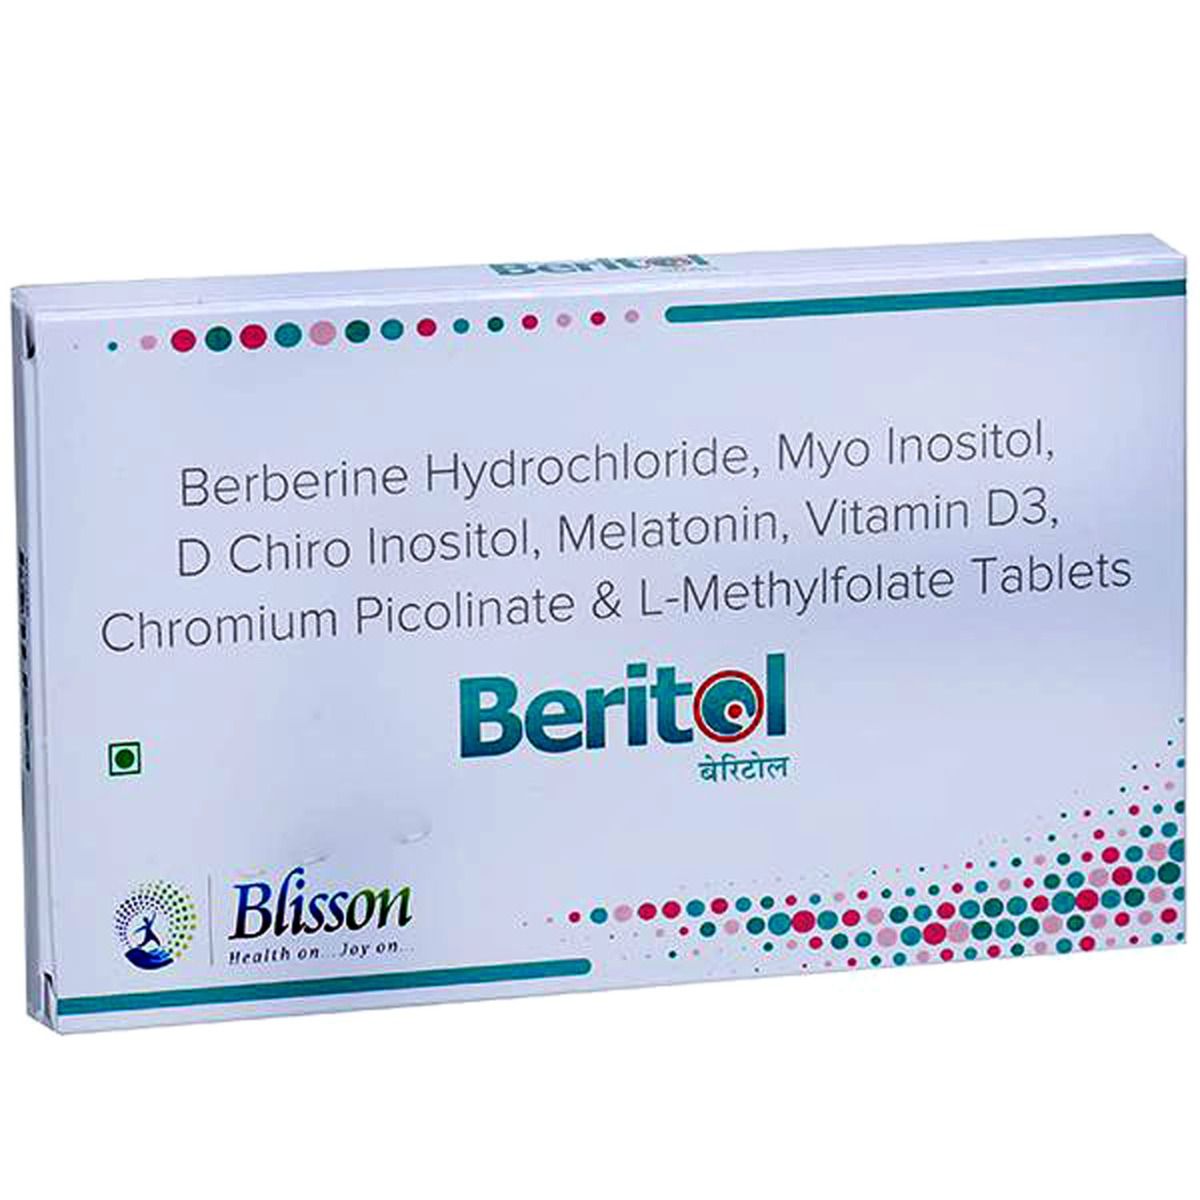 Buy Beritol Tablet 10's Online